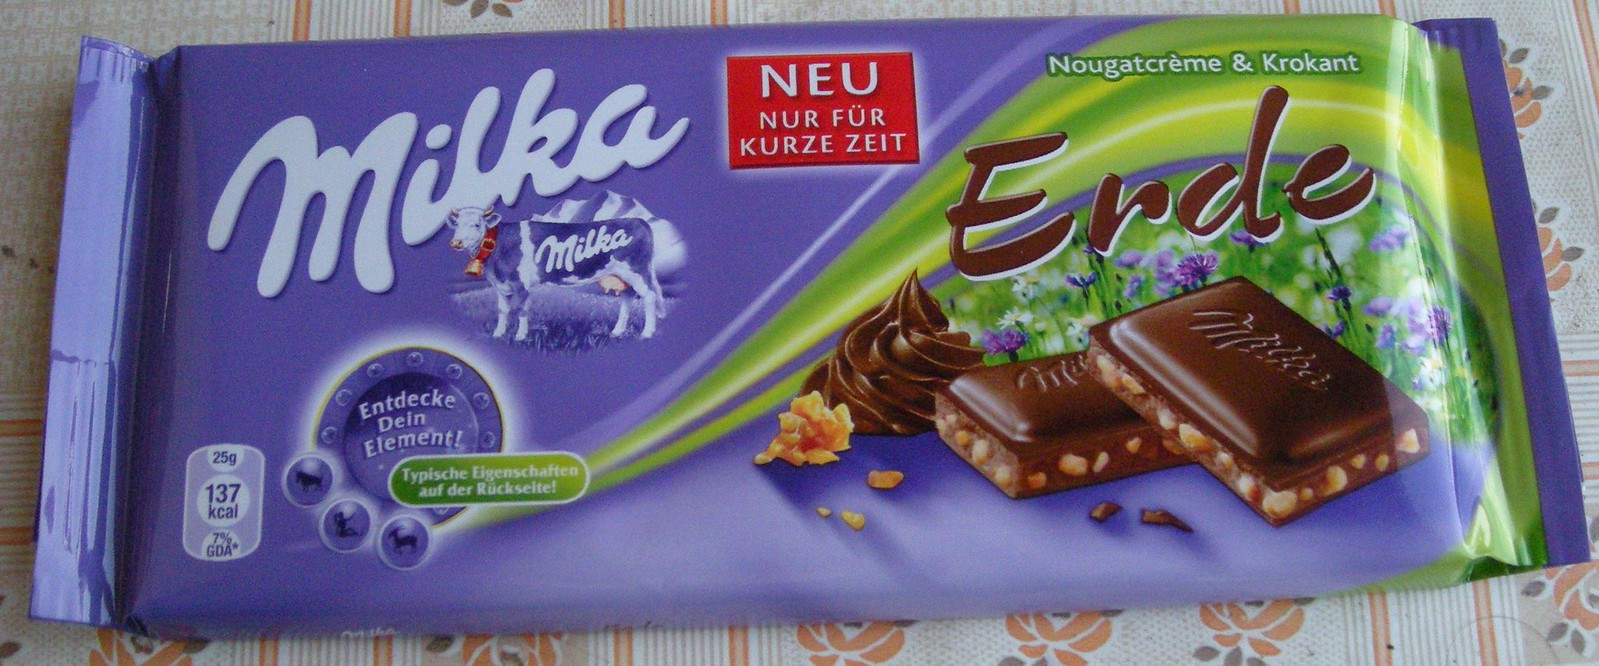 Milka Erde | Milka Schokolade mit Nougatcreme und Krokant Ge… | Flickr